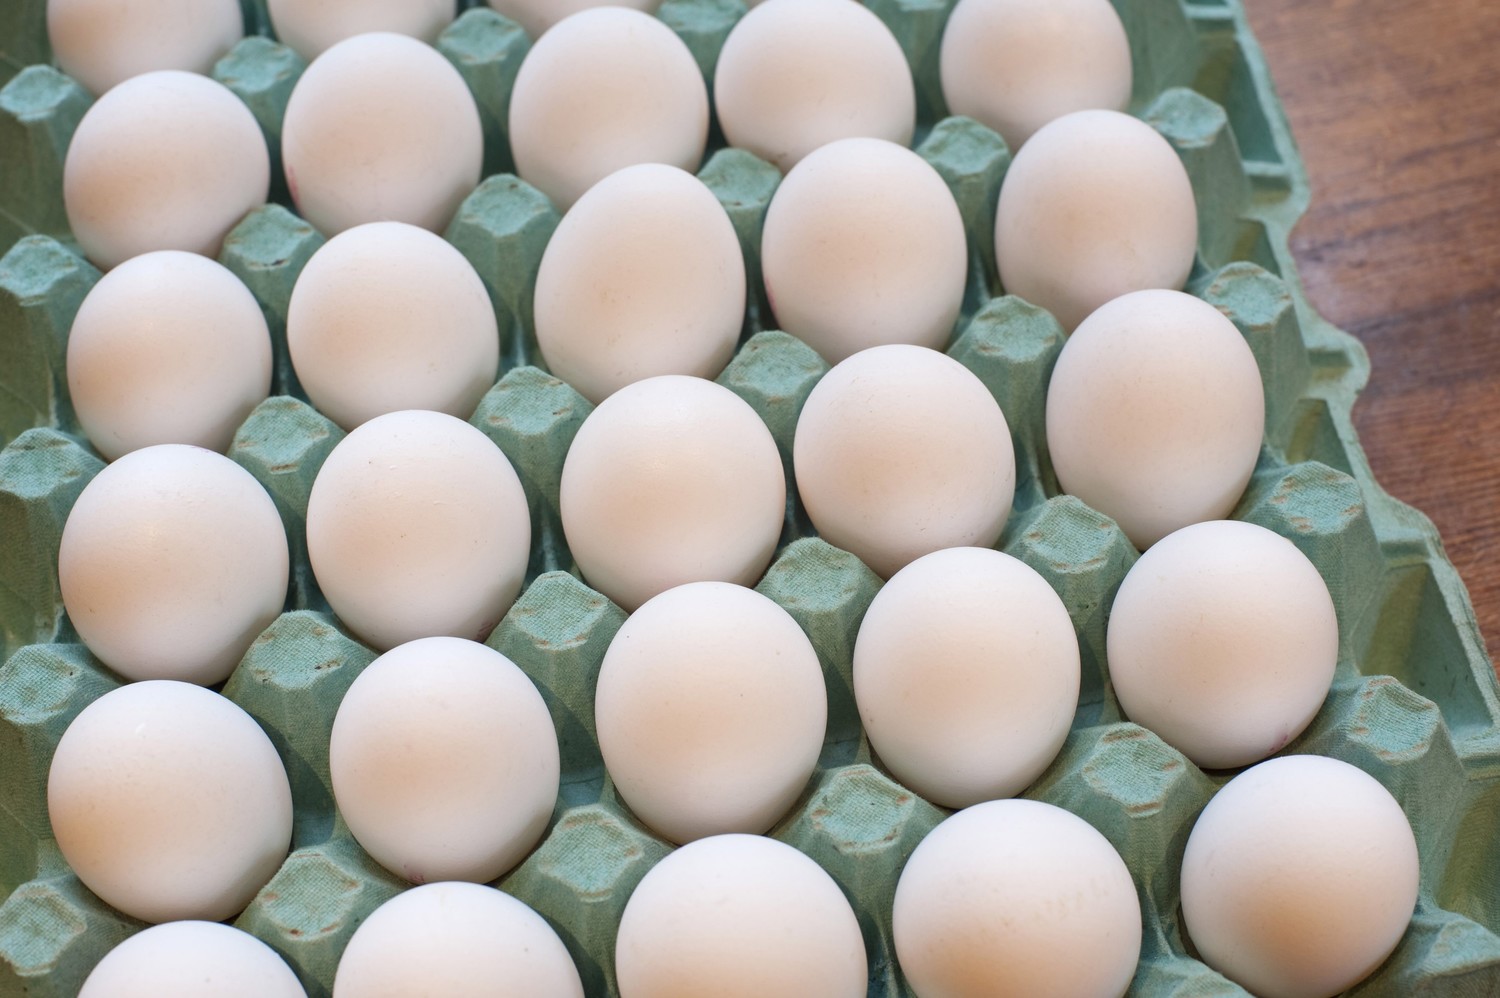 Extra Large Eggs 2.5 dozen flat